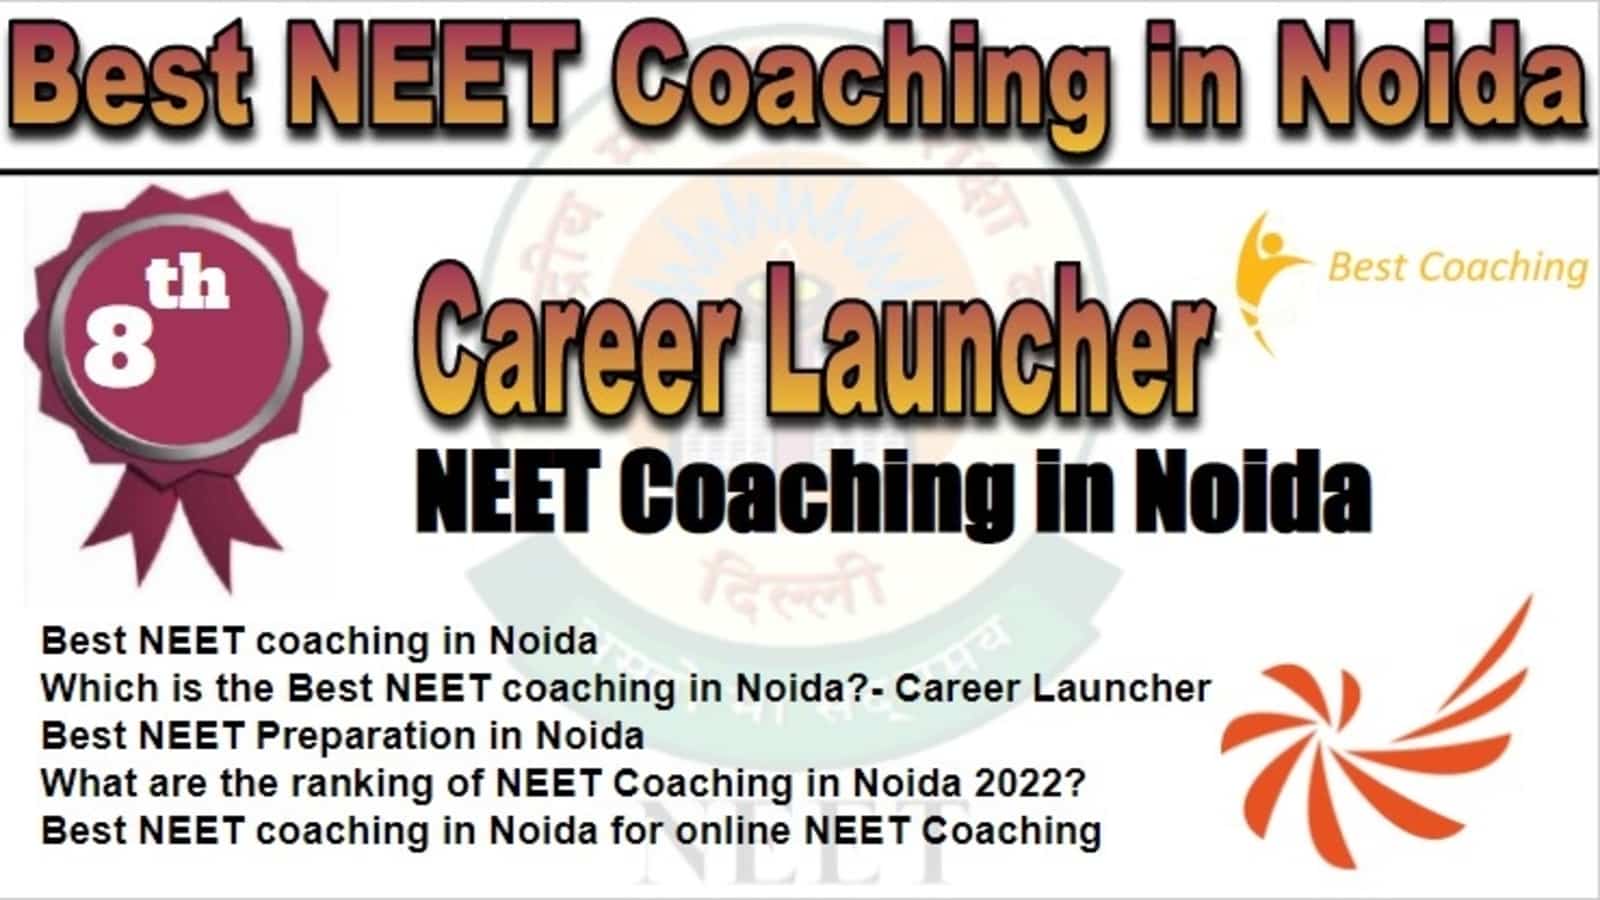 Rank 8 Best NEET Coaching in Noida